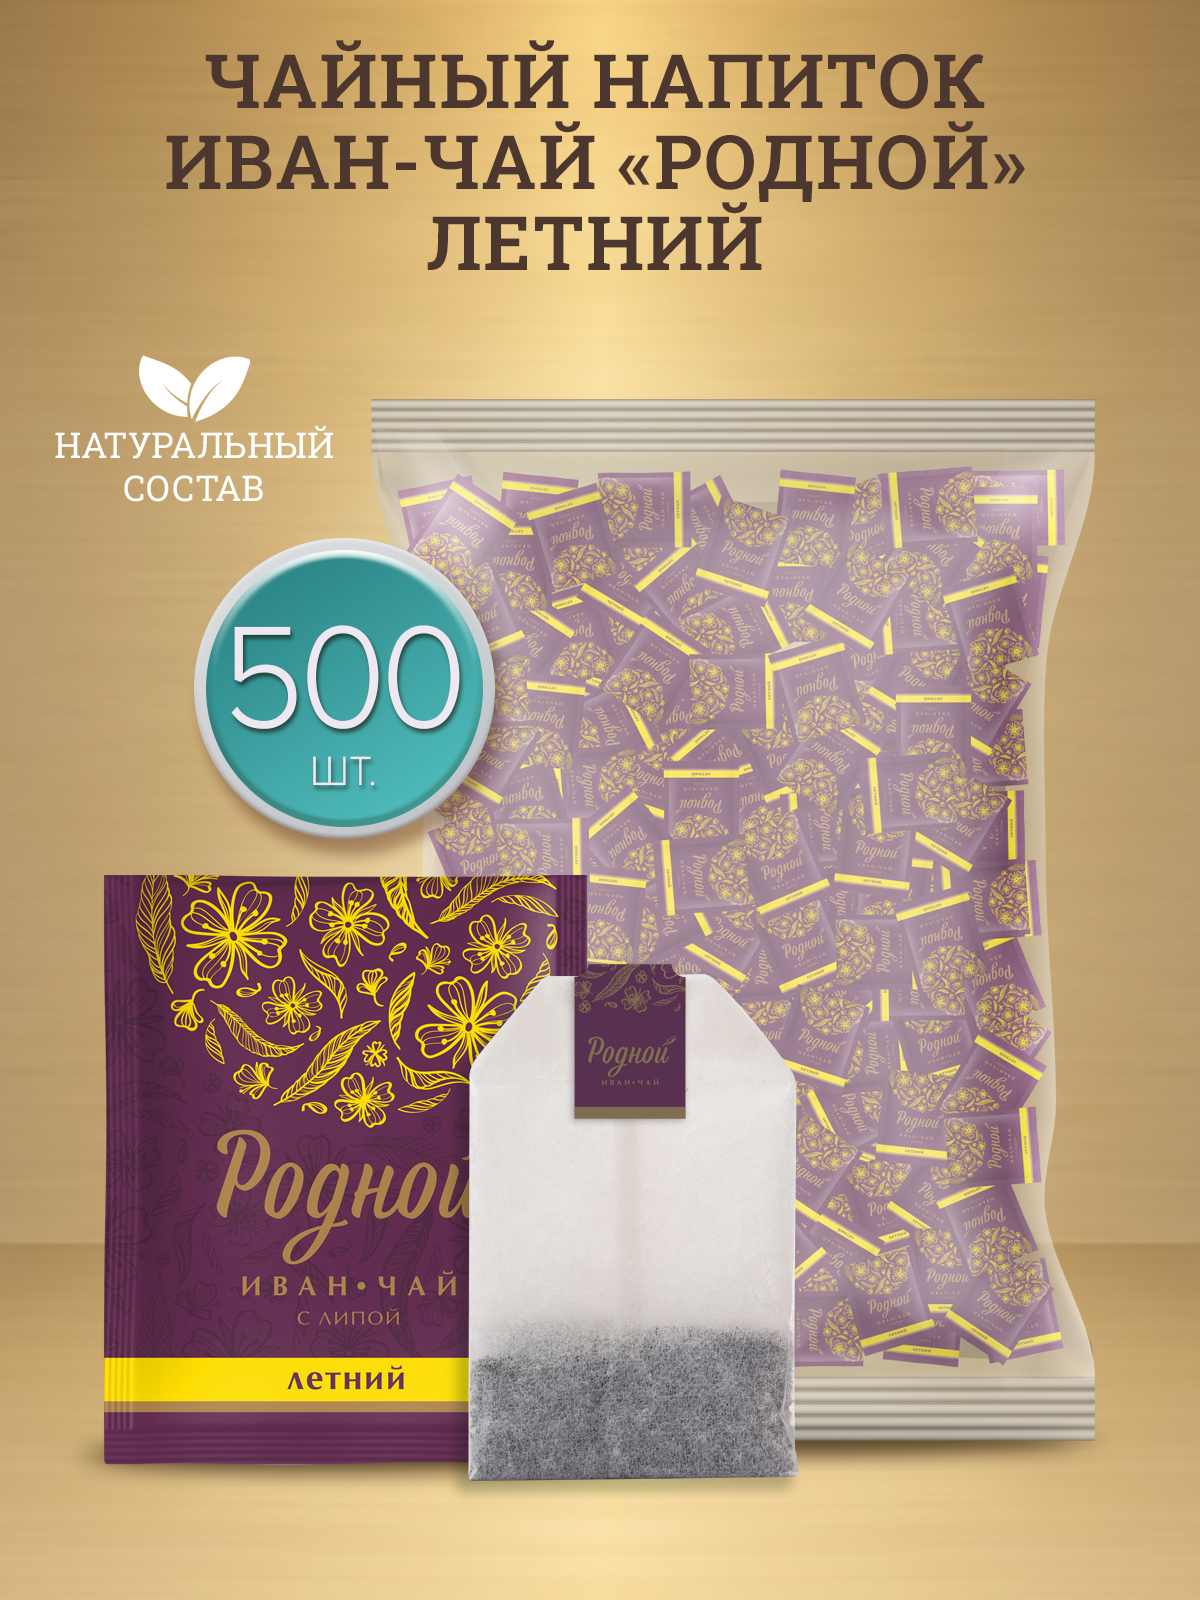 Иван-чай Родной ферментированный с Липой, 500 шт х 2 г